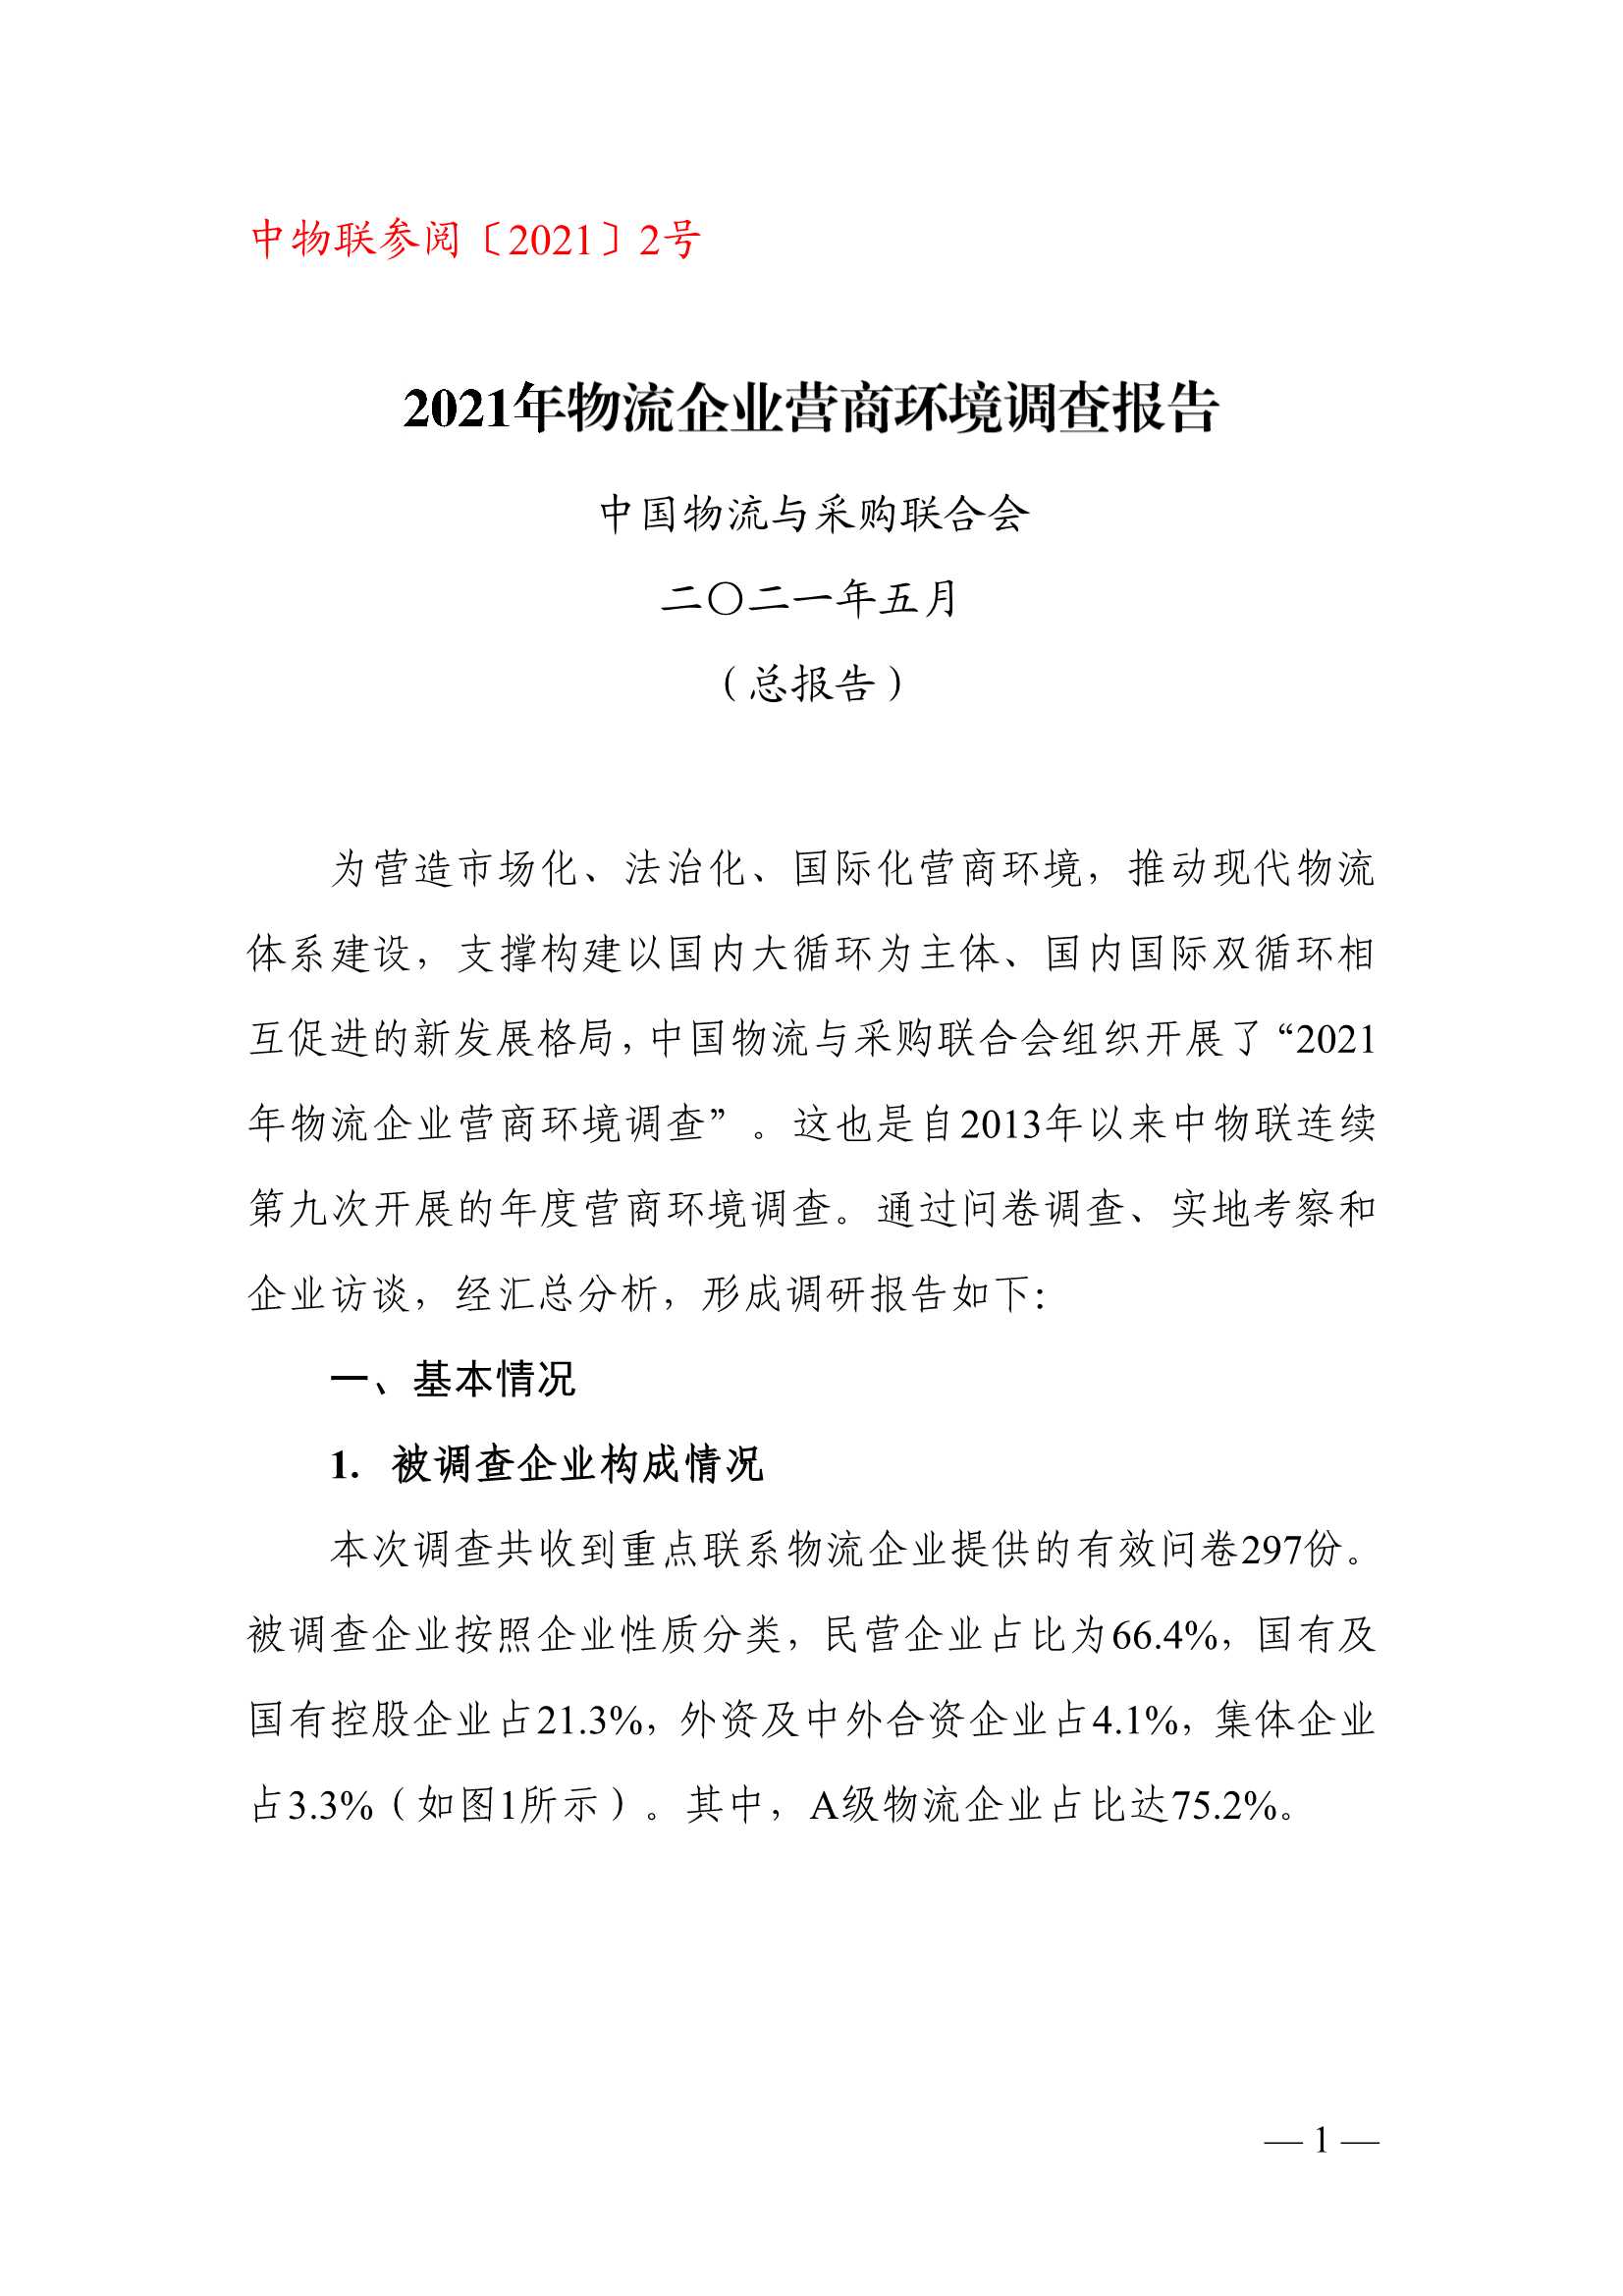 中国物流与采购联合会-2021年物流企业营商环境调查报告-2021.06-52页